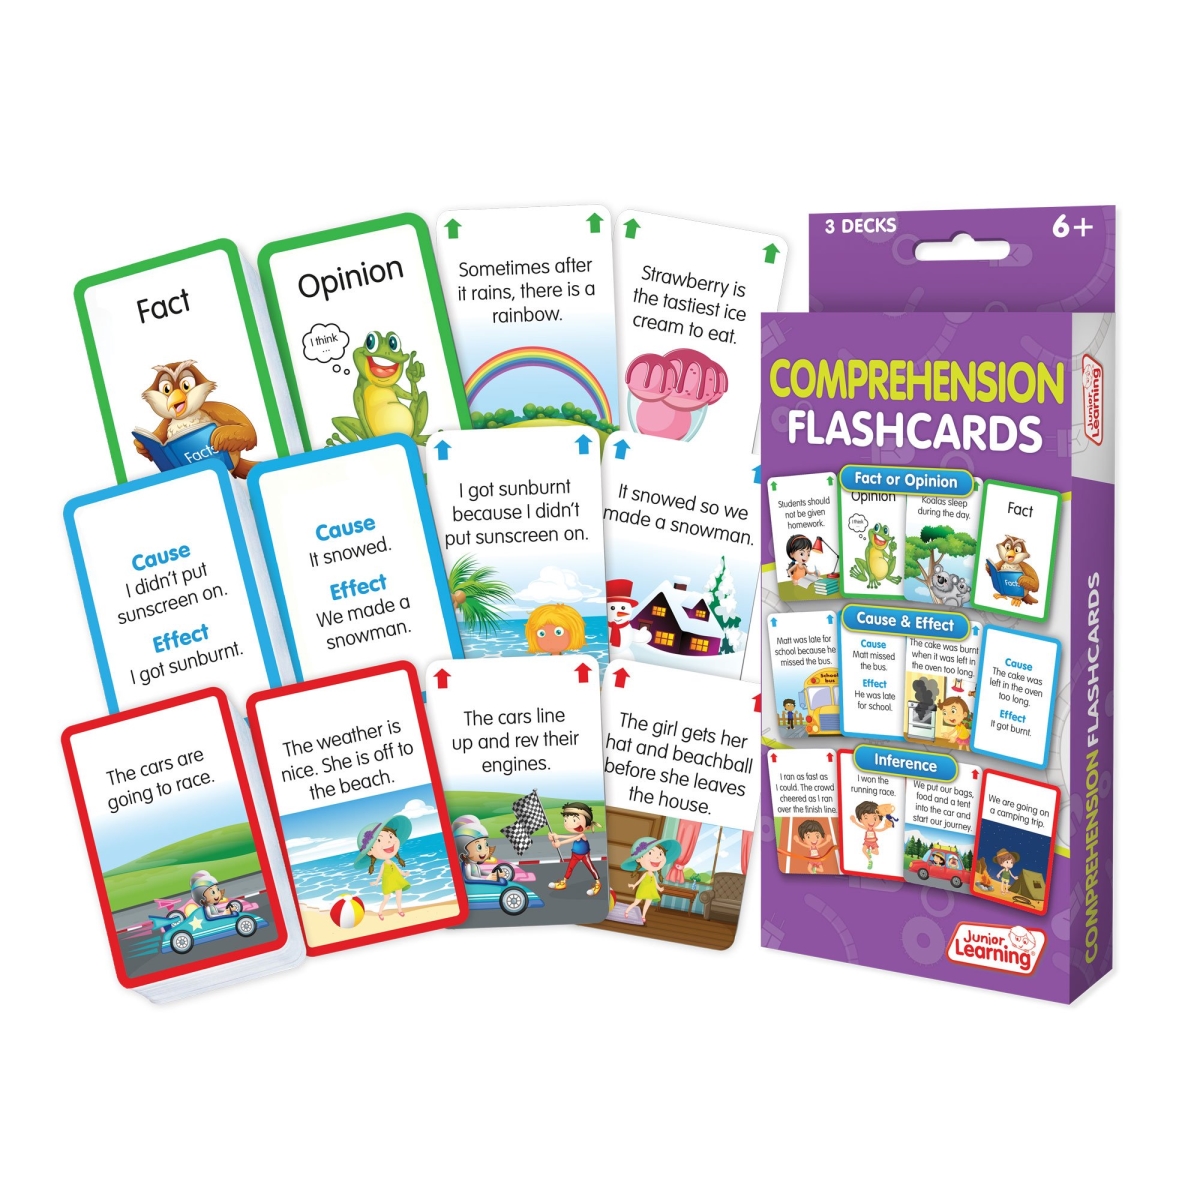 Jrl217 Comprehension Flash Card Game